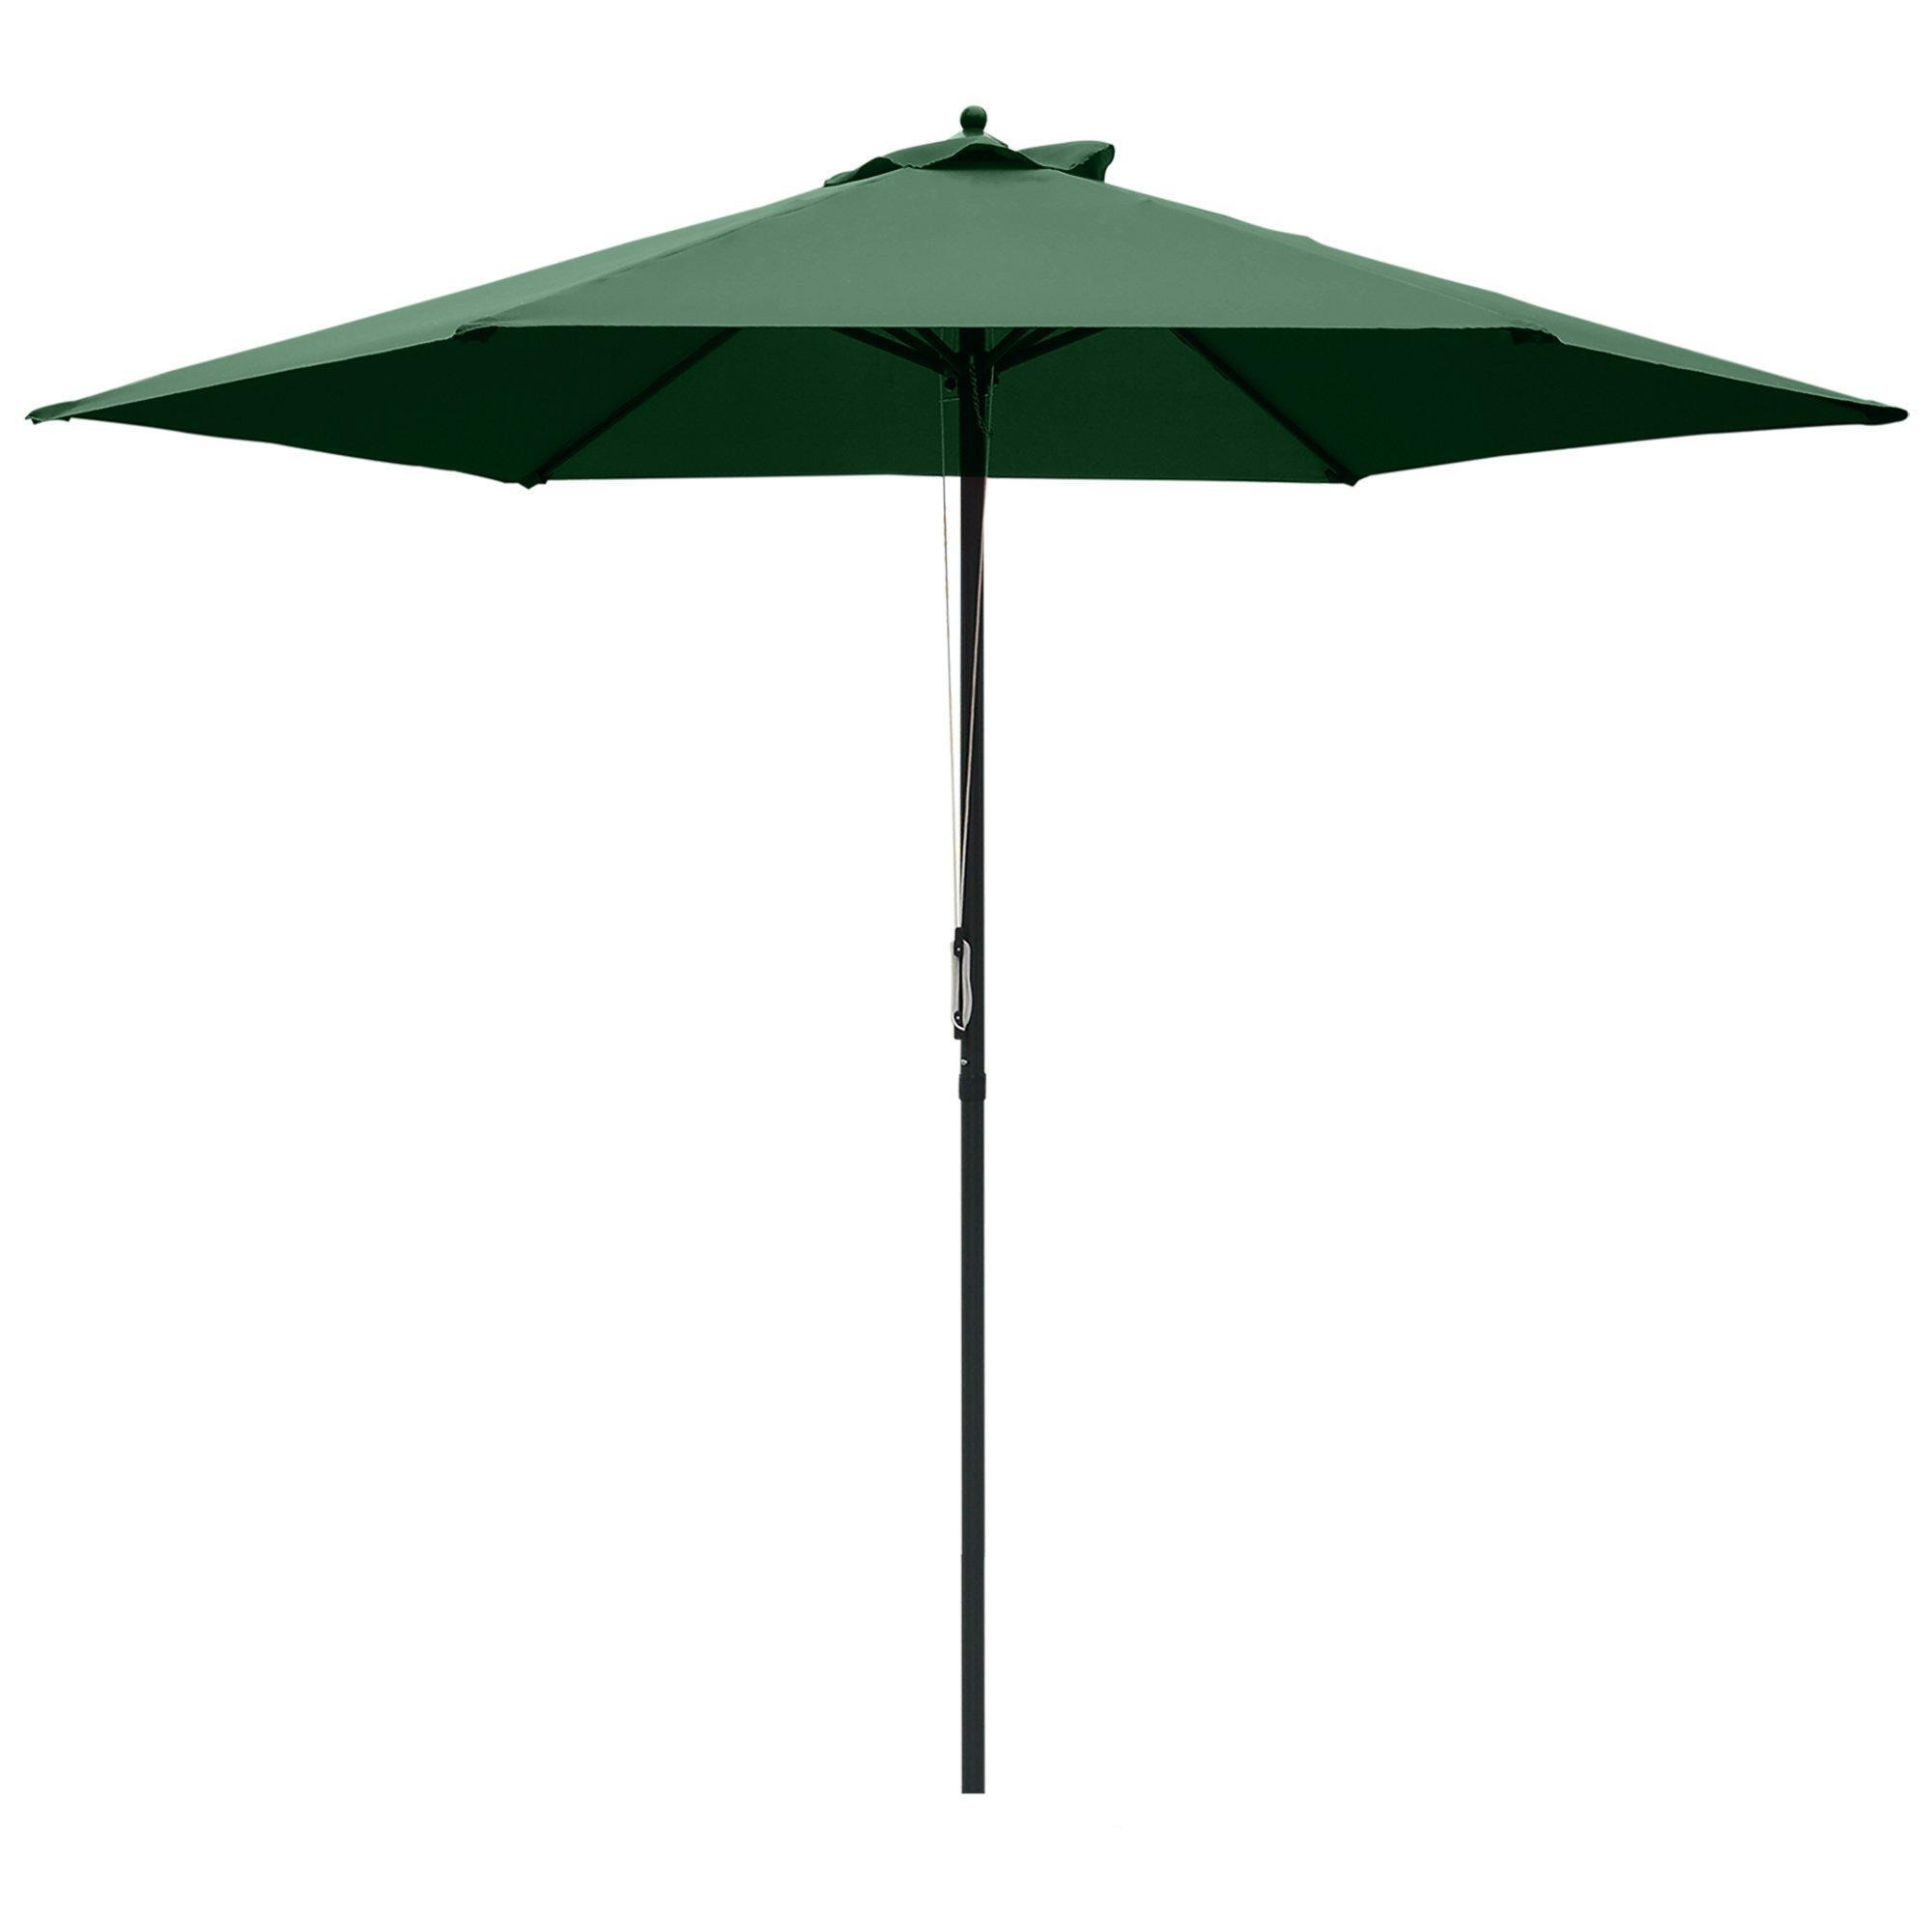 2.8m Patio Umbrella Parasol Outdoor Table Umbrella 6 Ribs - image 1